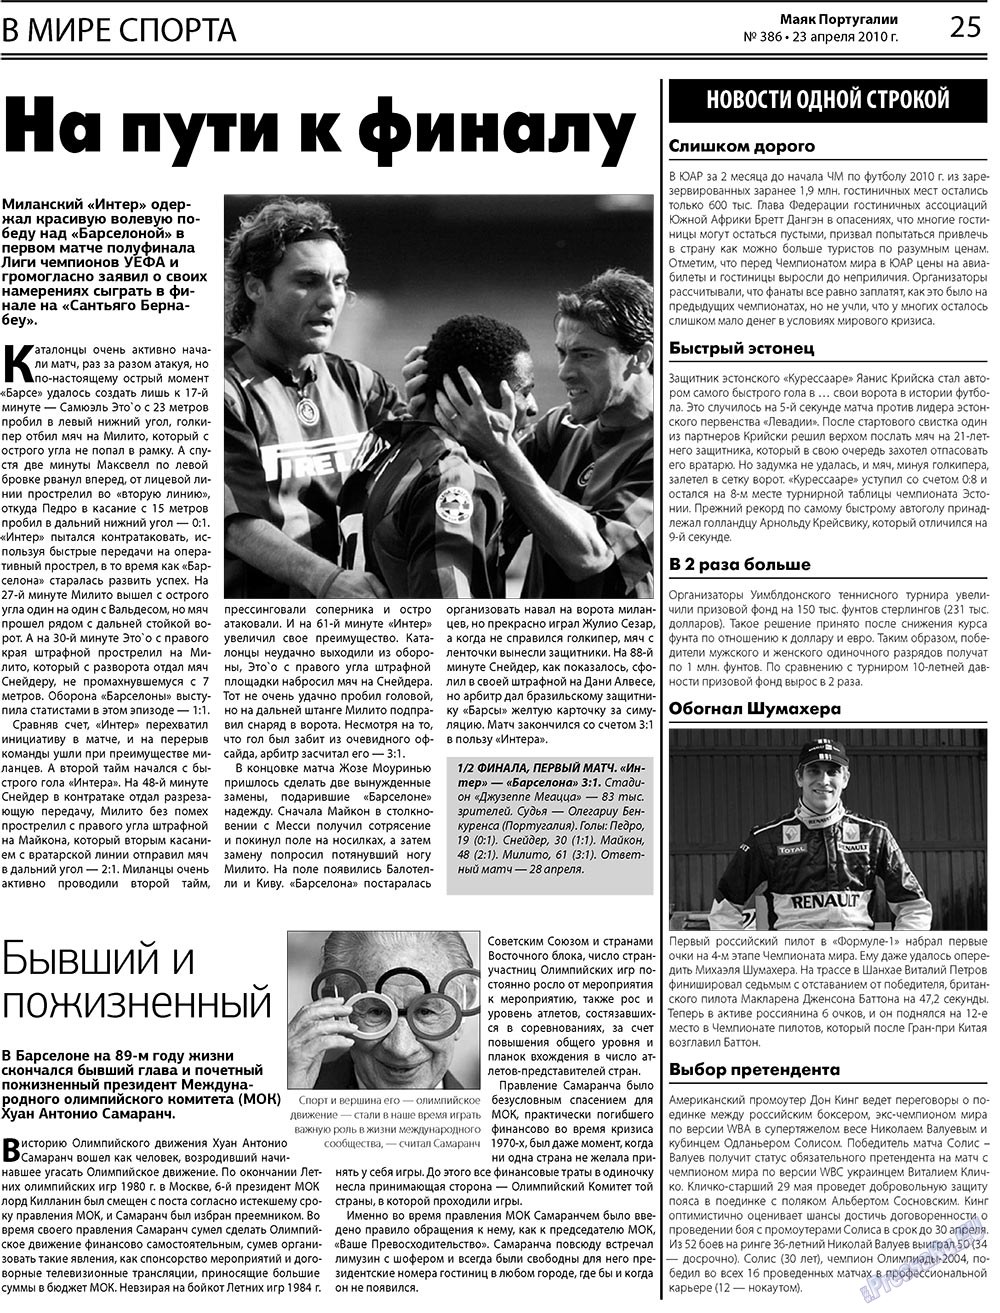 Маяк Португалии (газета). 2010 год, номер 386, стр. 25